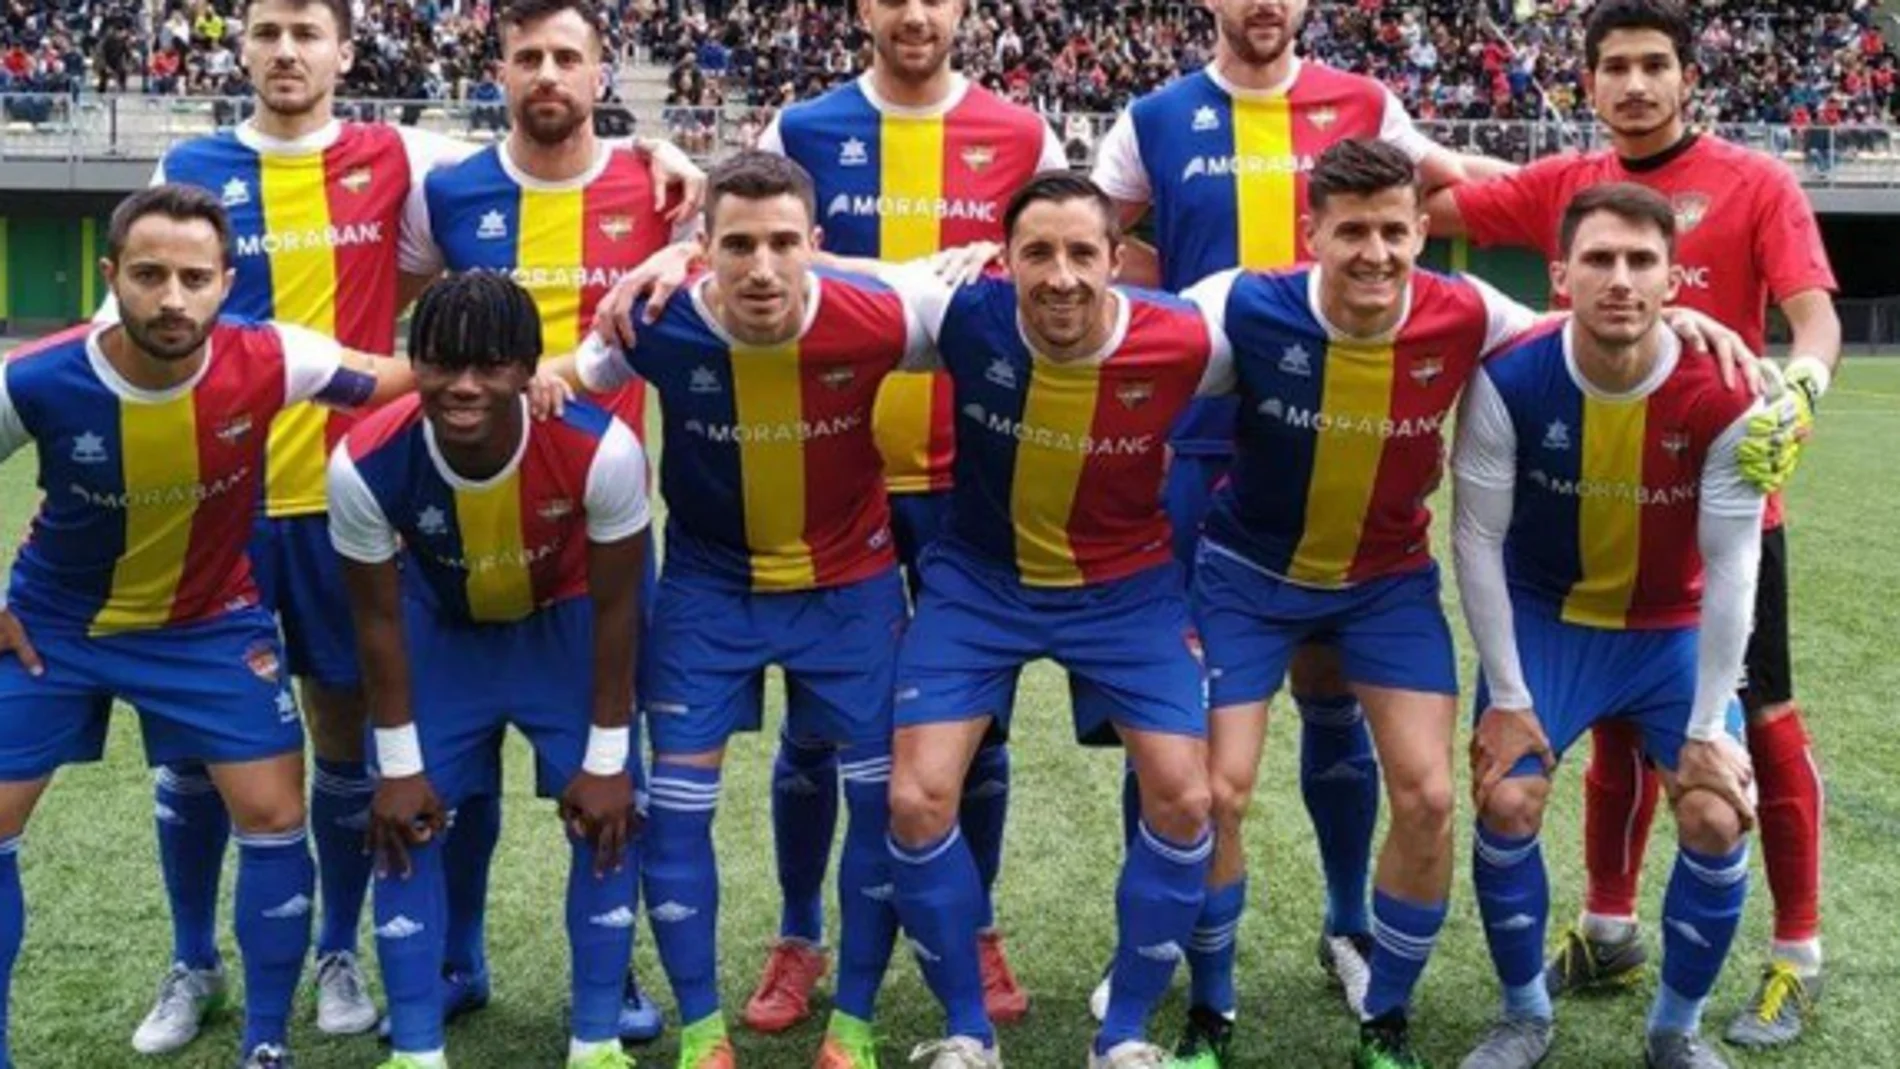 El Andorra juega en desde 1948 participa en el sistema de ligas español